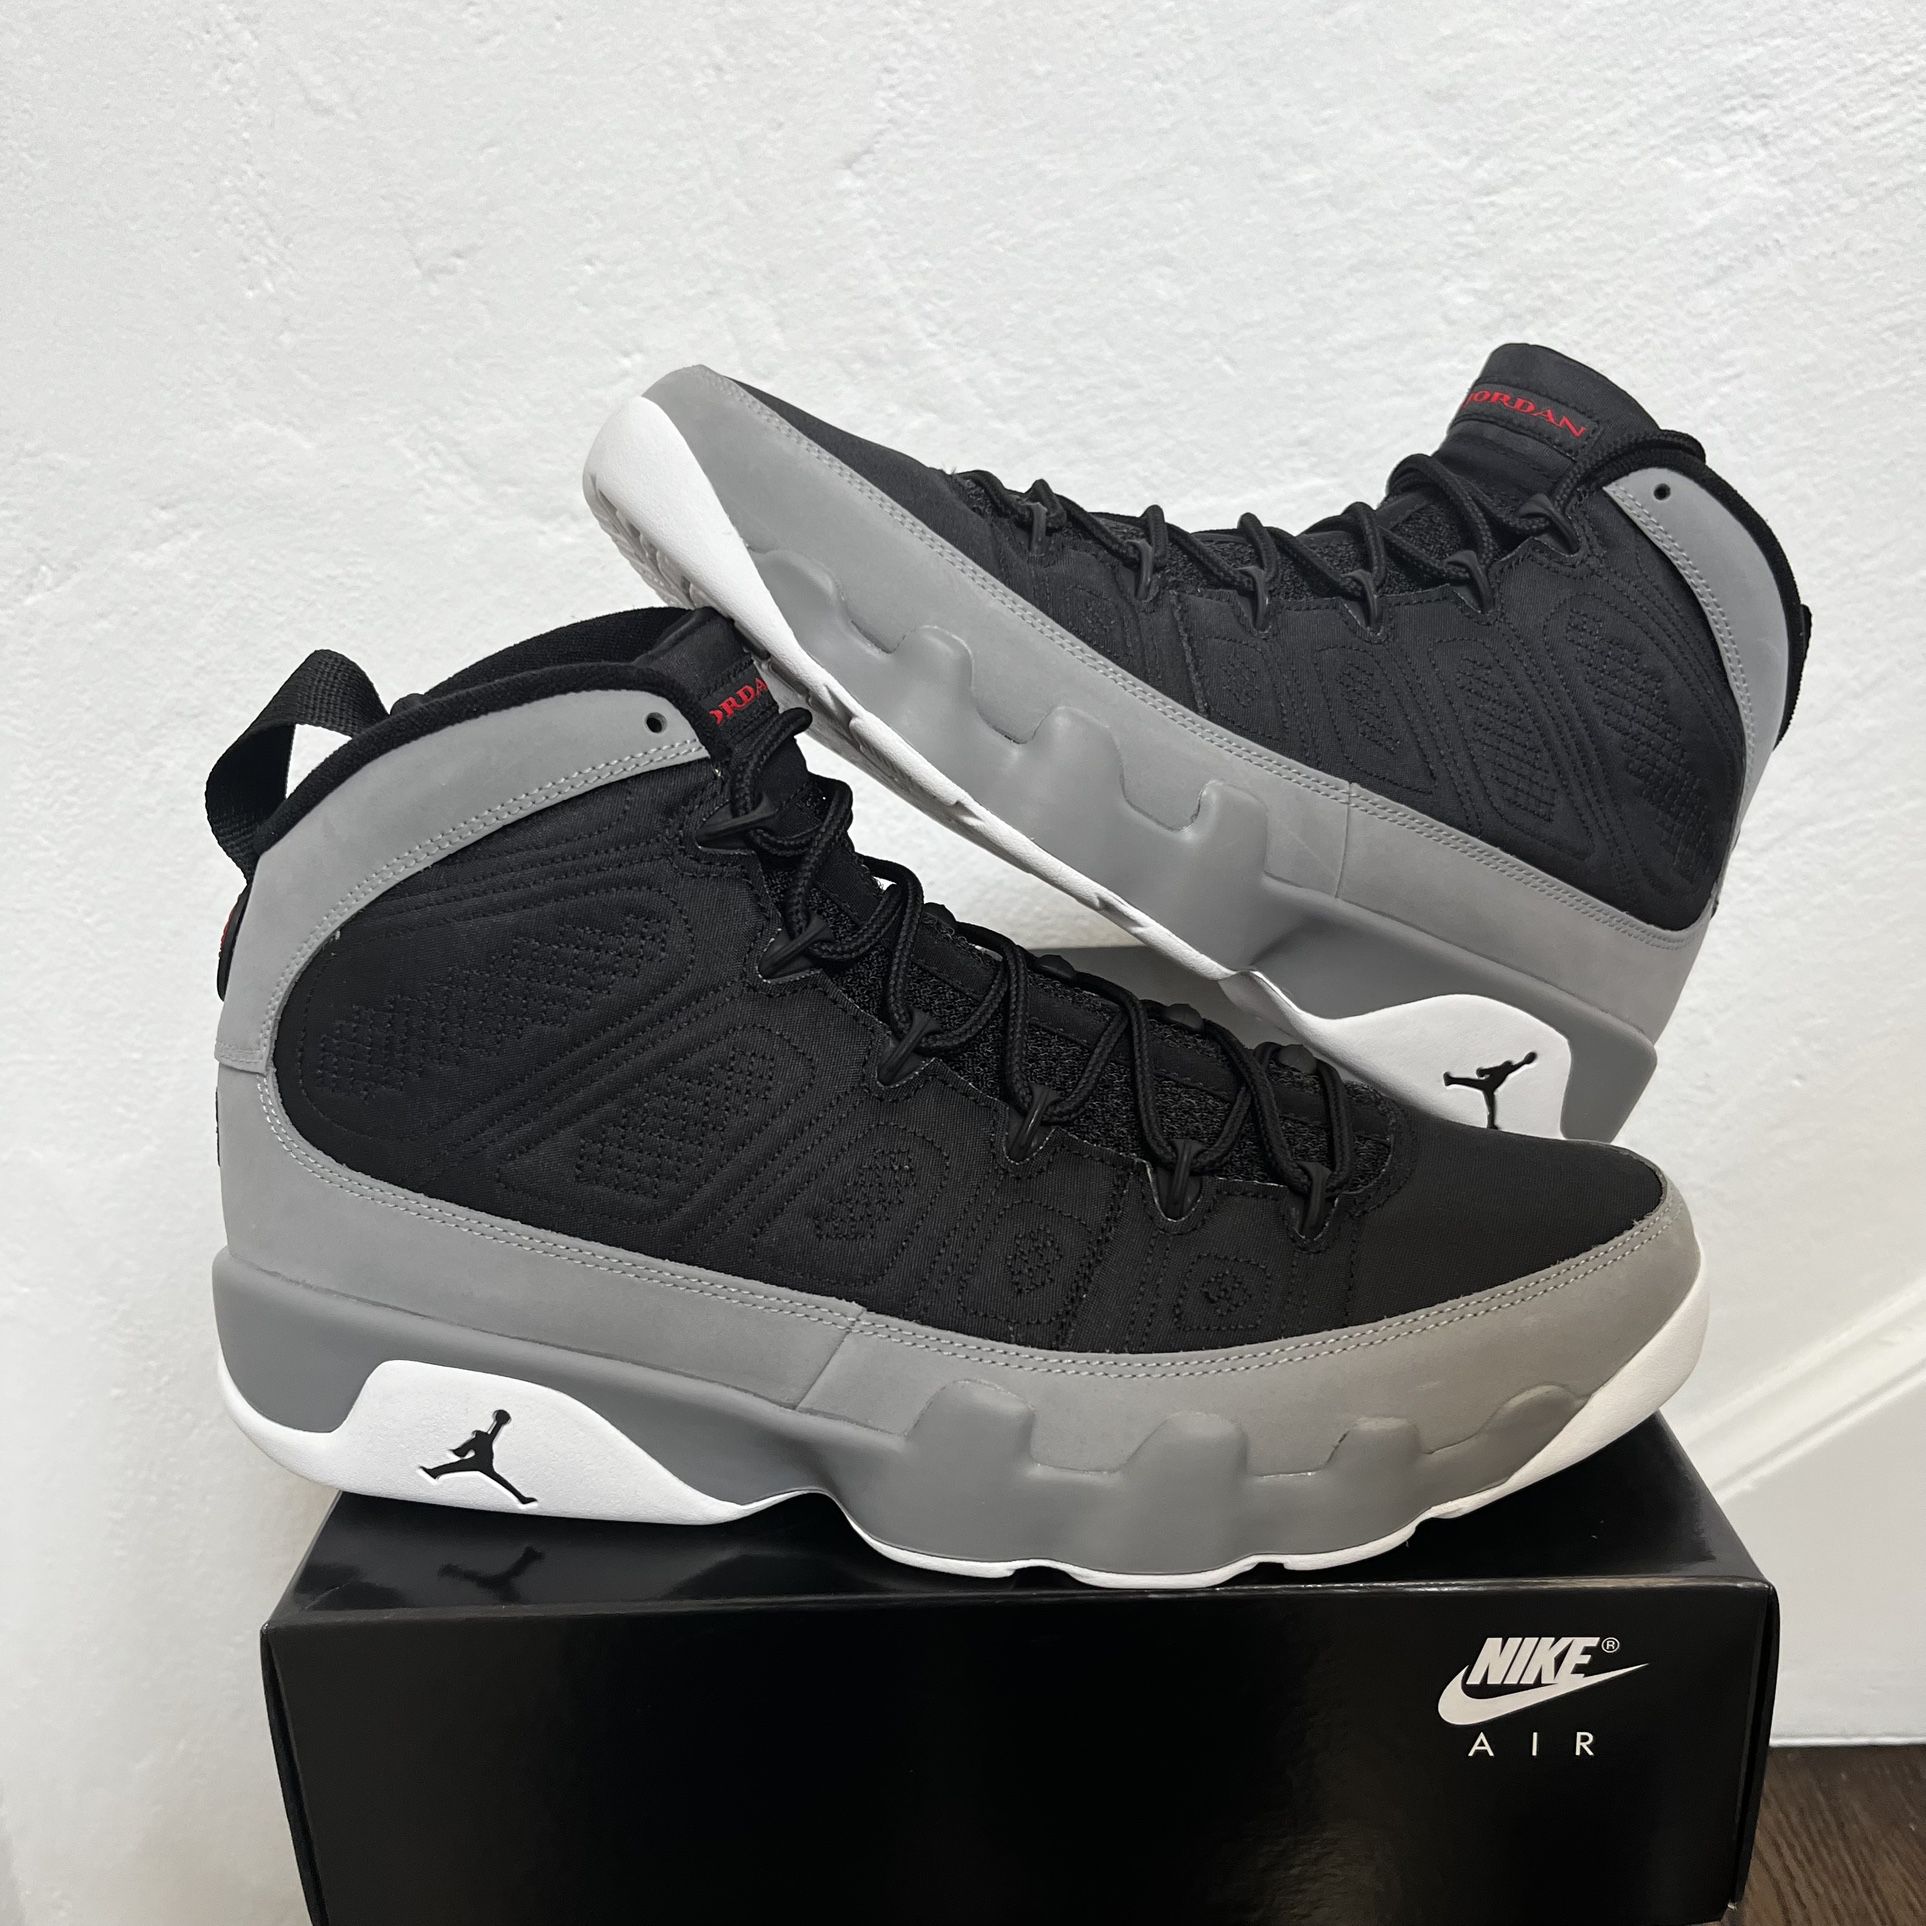 Nike Air Jordan 9 Particle Grey Black - Mens Size 11.5 12 13 14